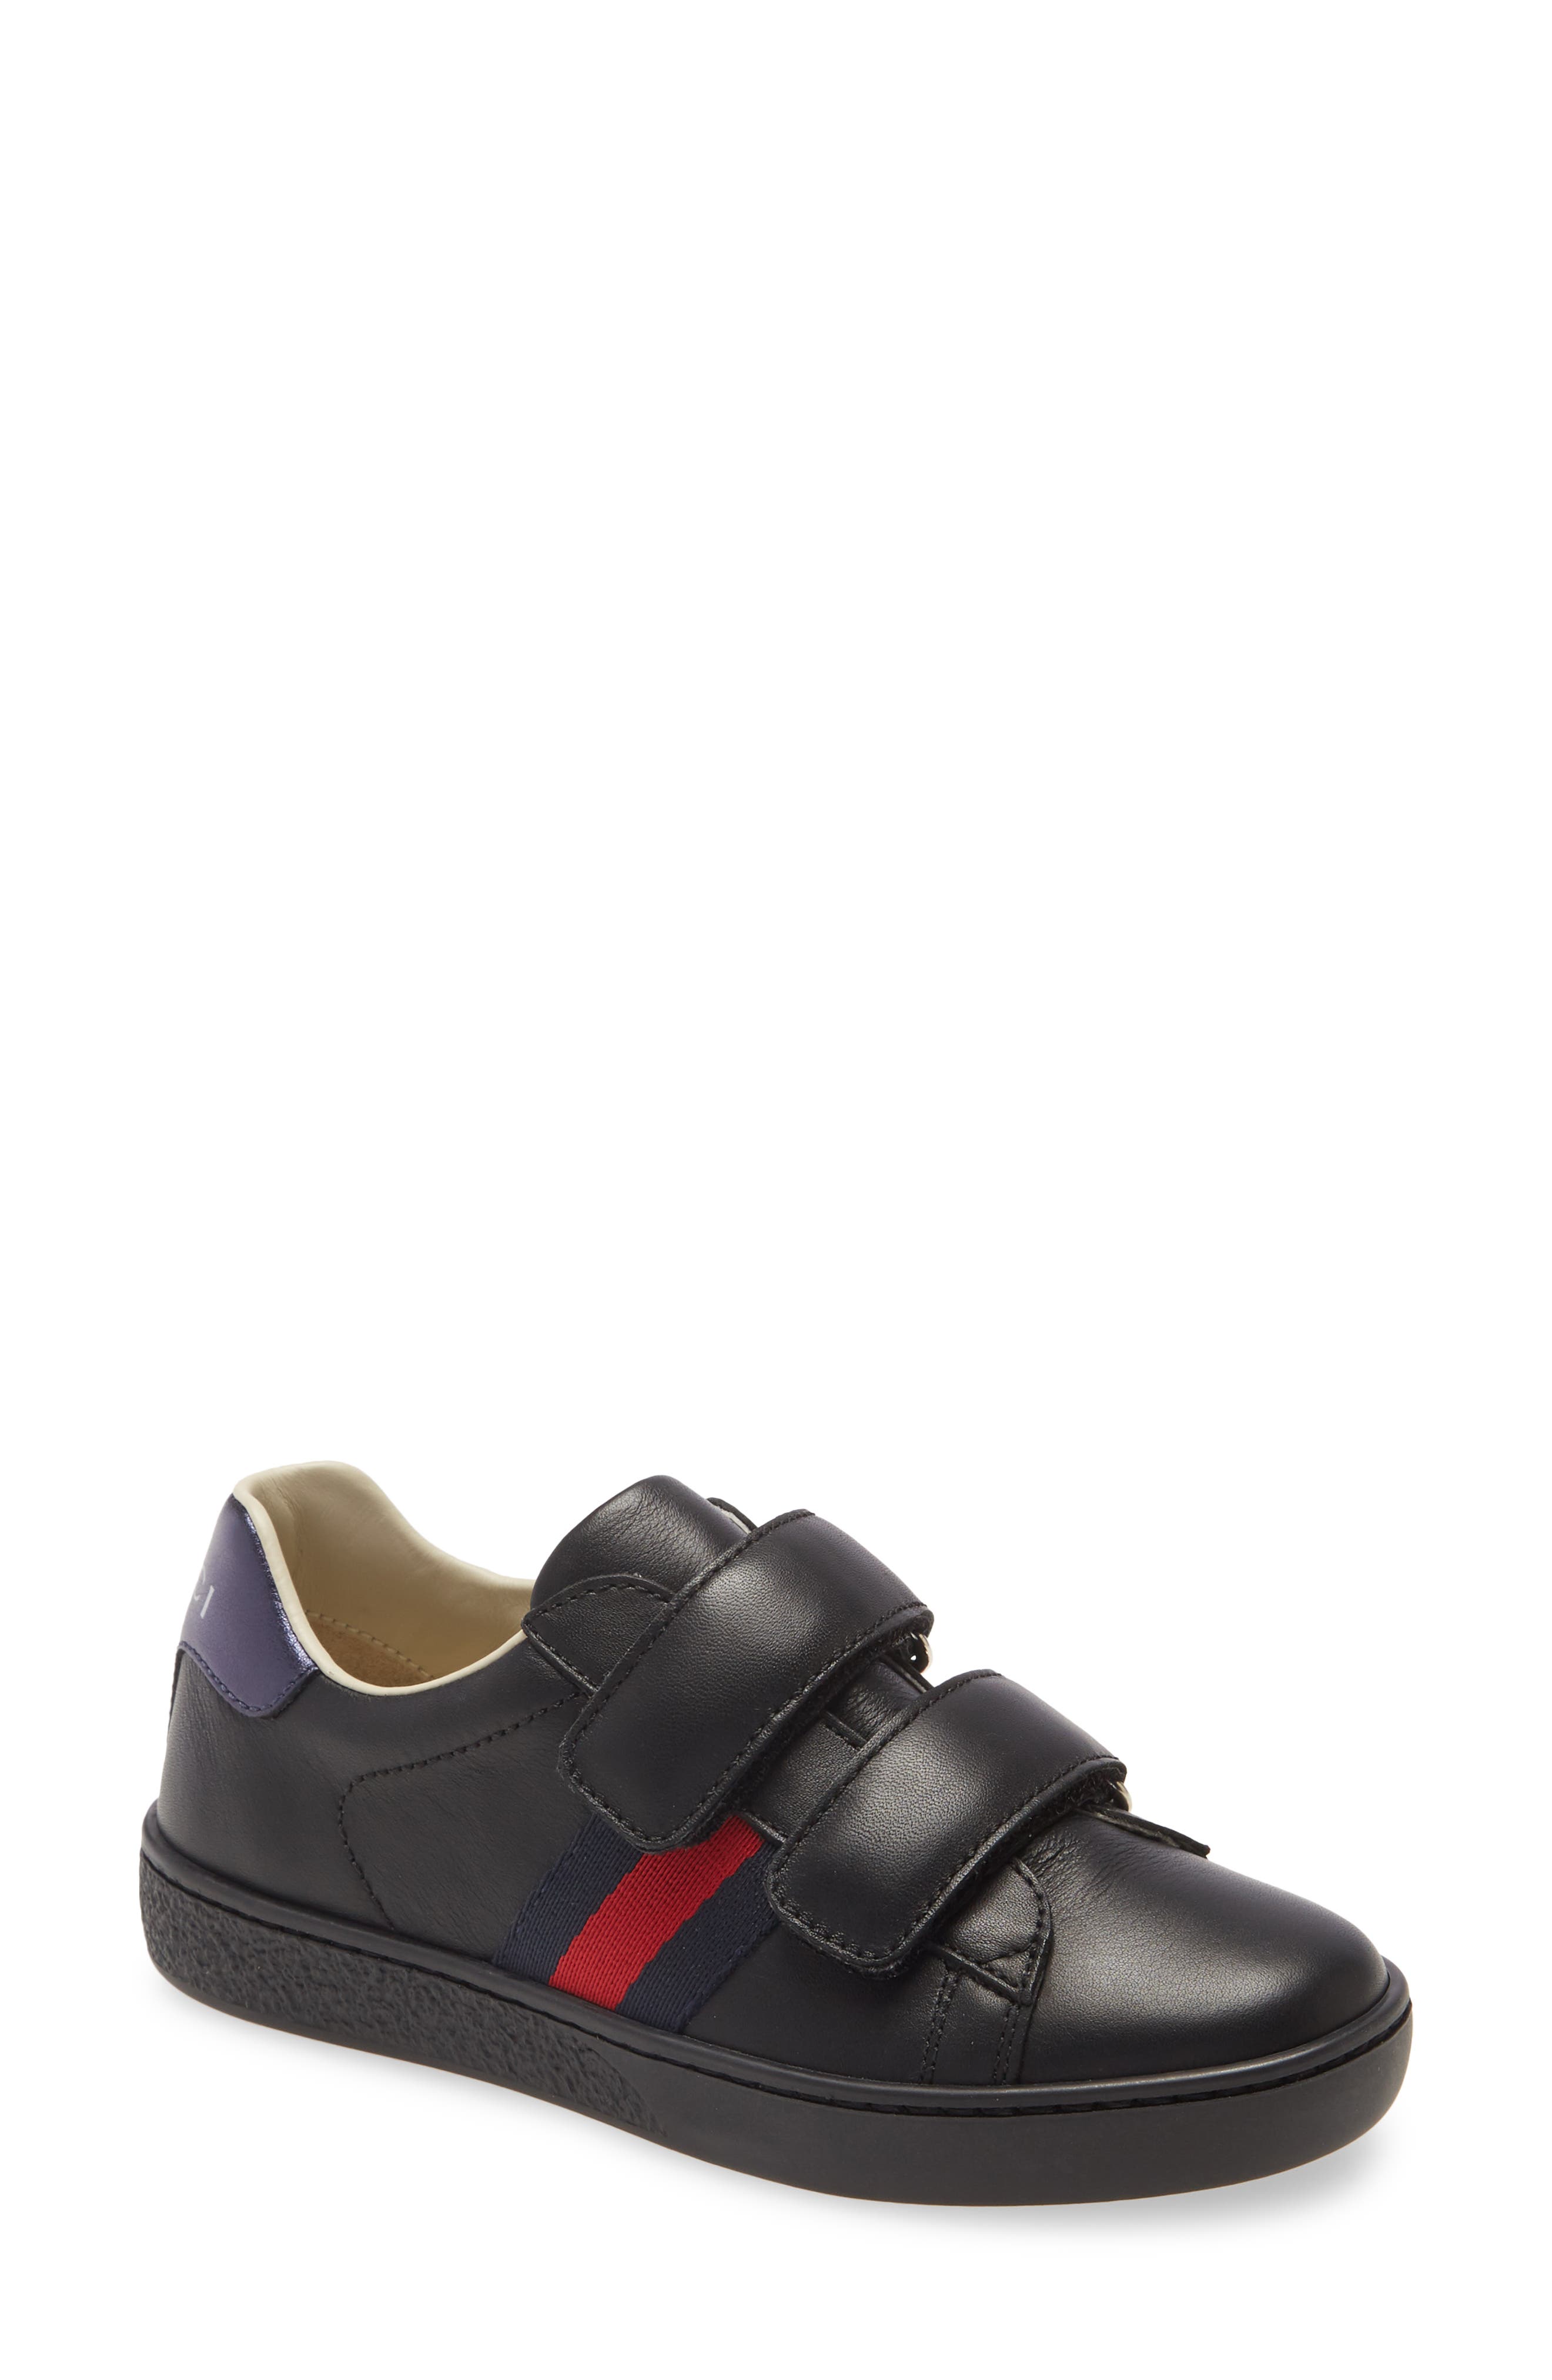 Schoenen Jongensschoenen Sandalen Boys sandals size 9 red and black 